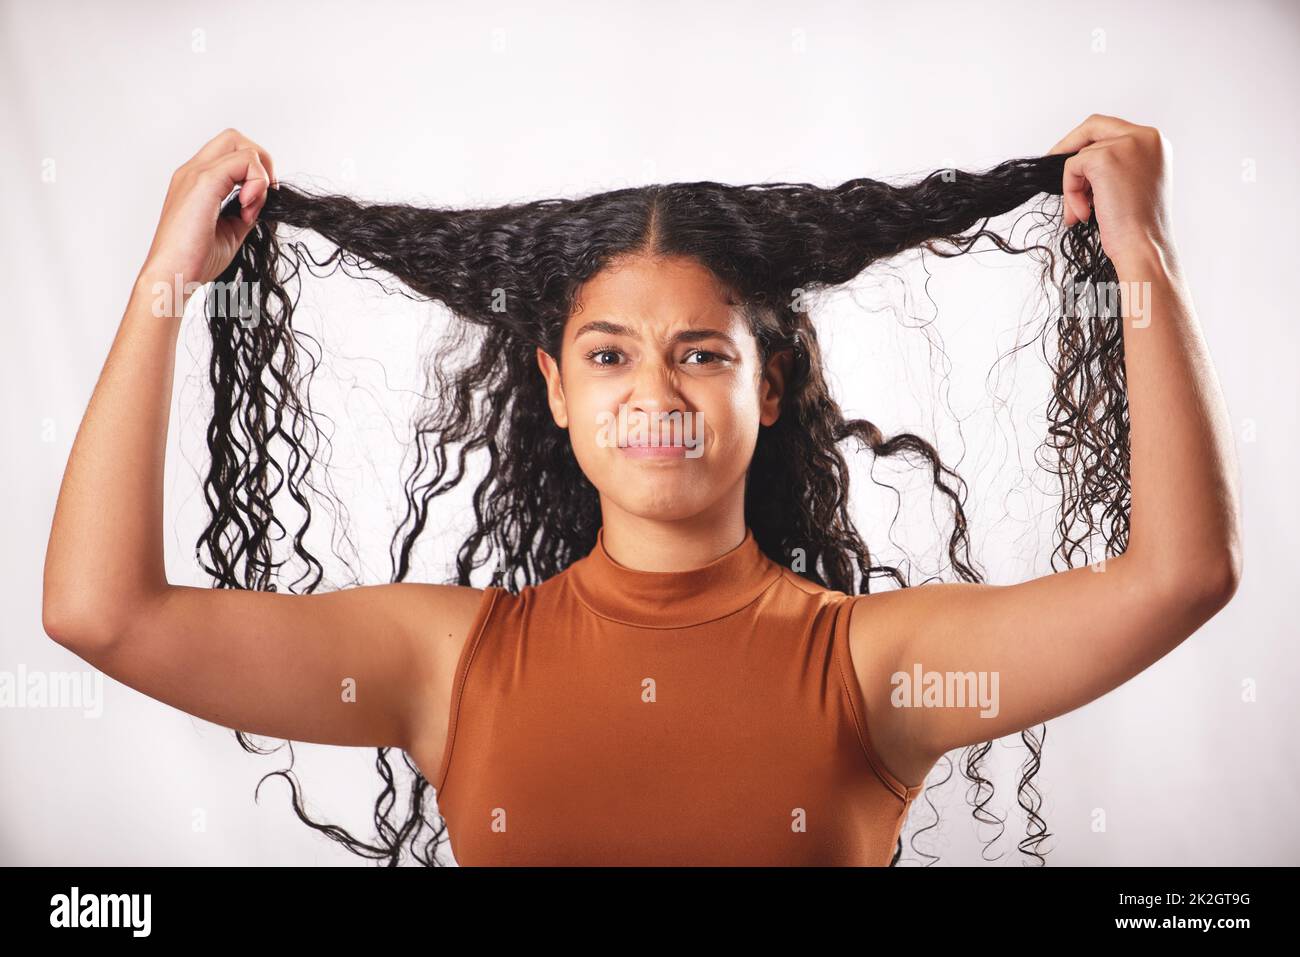 Sollte ich etwas anderes damit machen? Aufnahme einer jungen Frau mit langen braunen Haaren, die im Studio posiert. Stockfoto